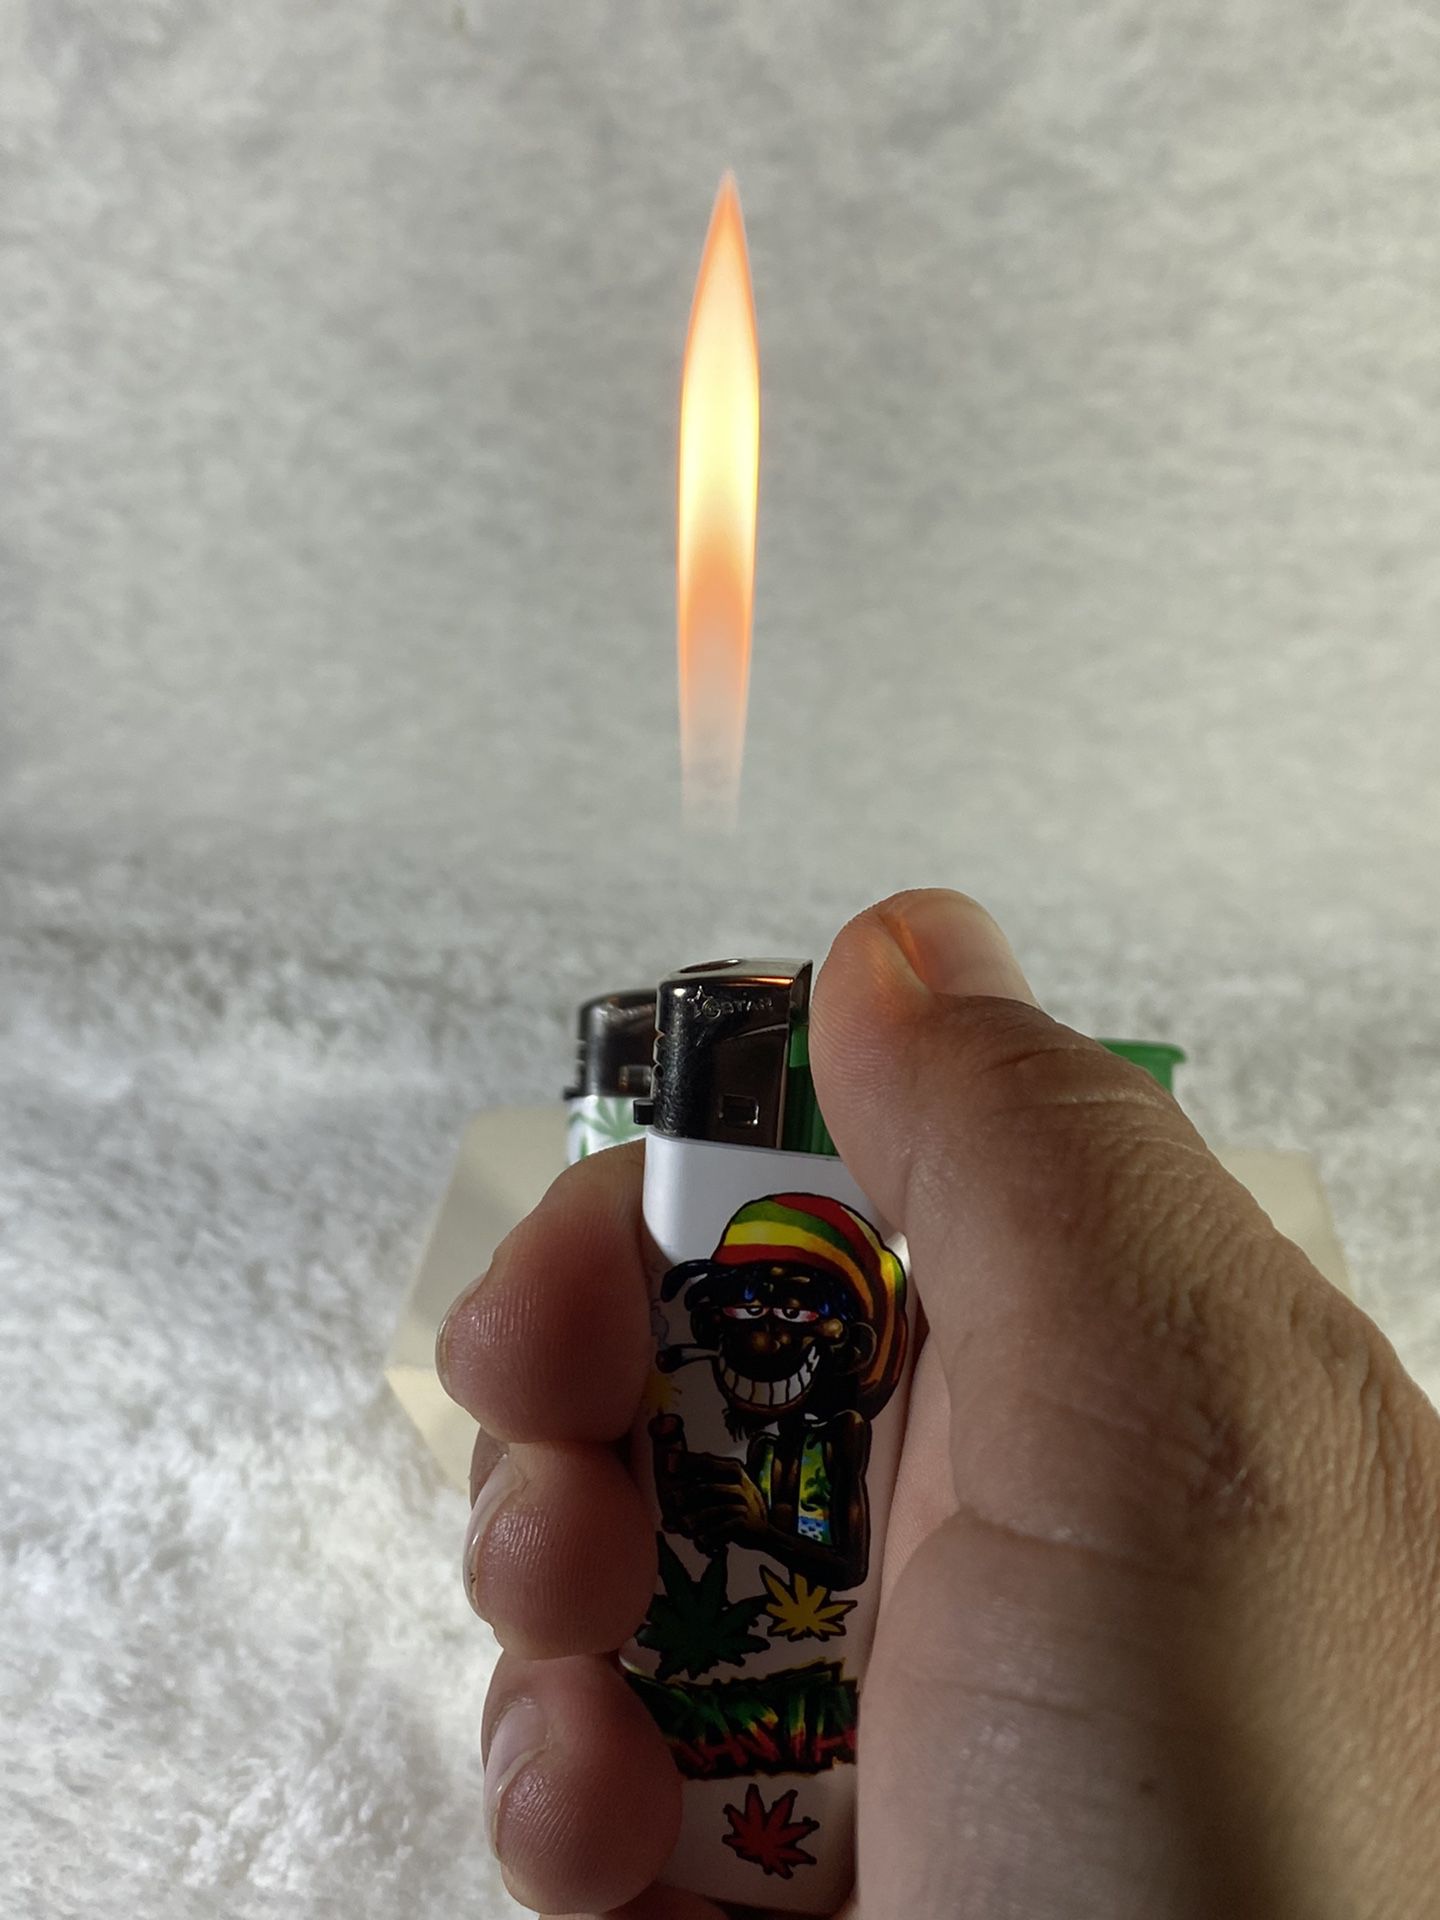 Hippie Inspired Lighter 3 For $6